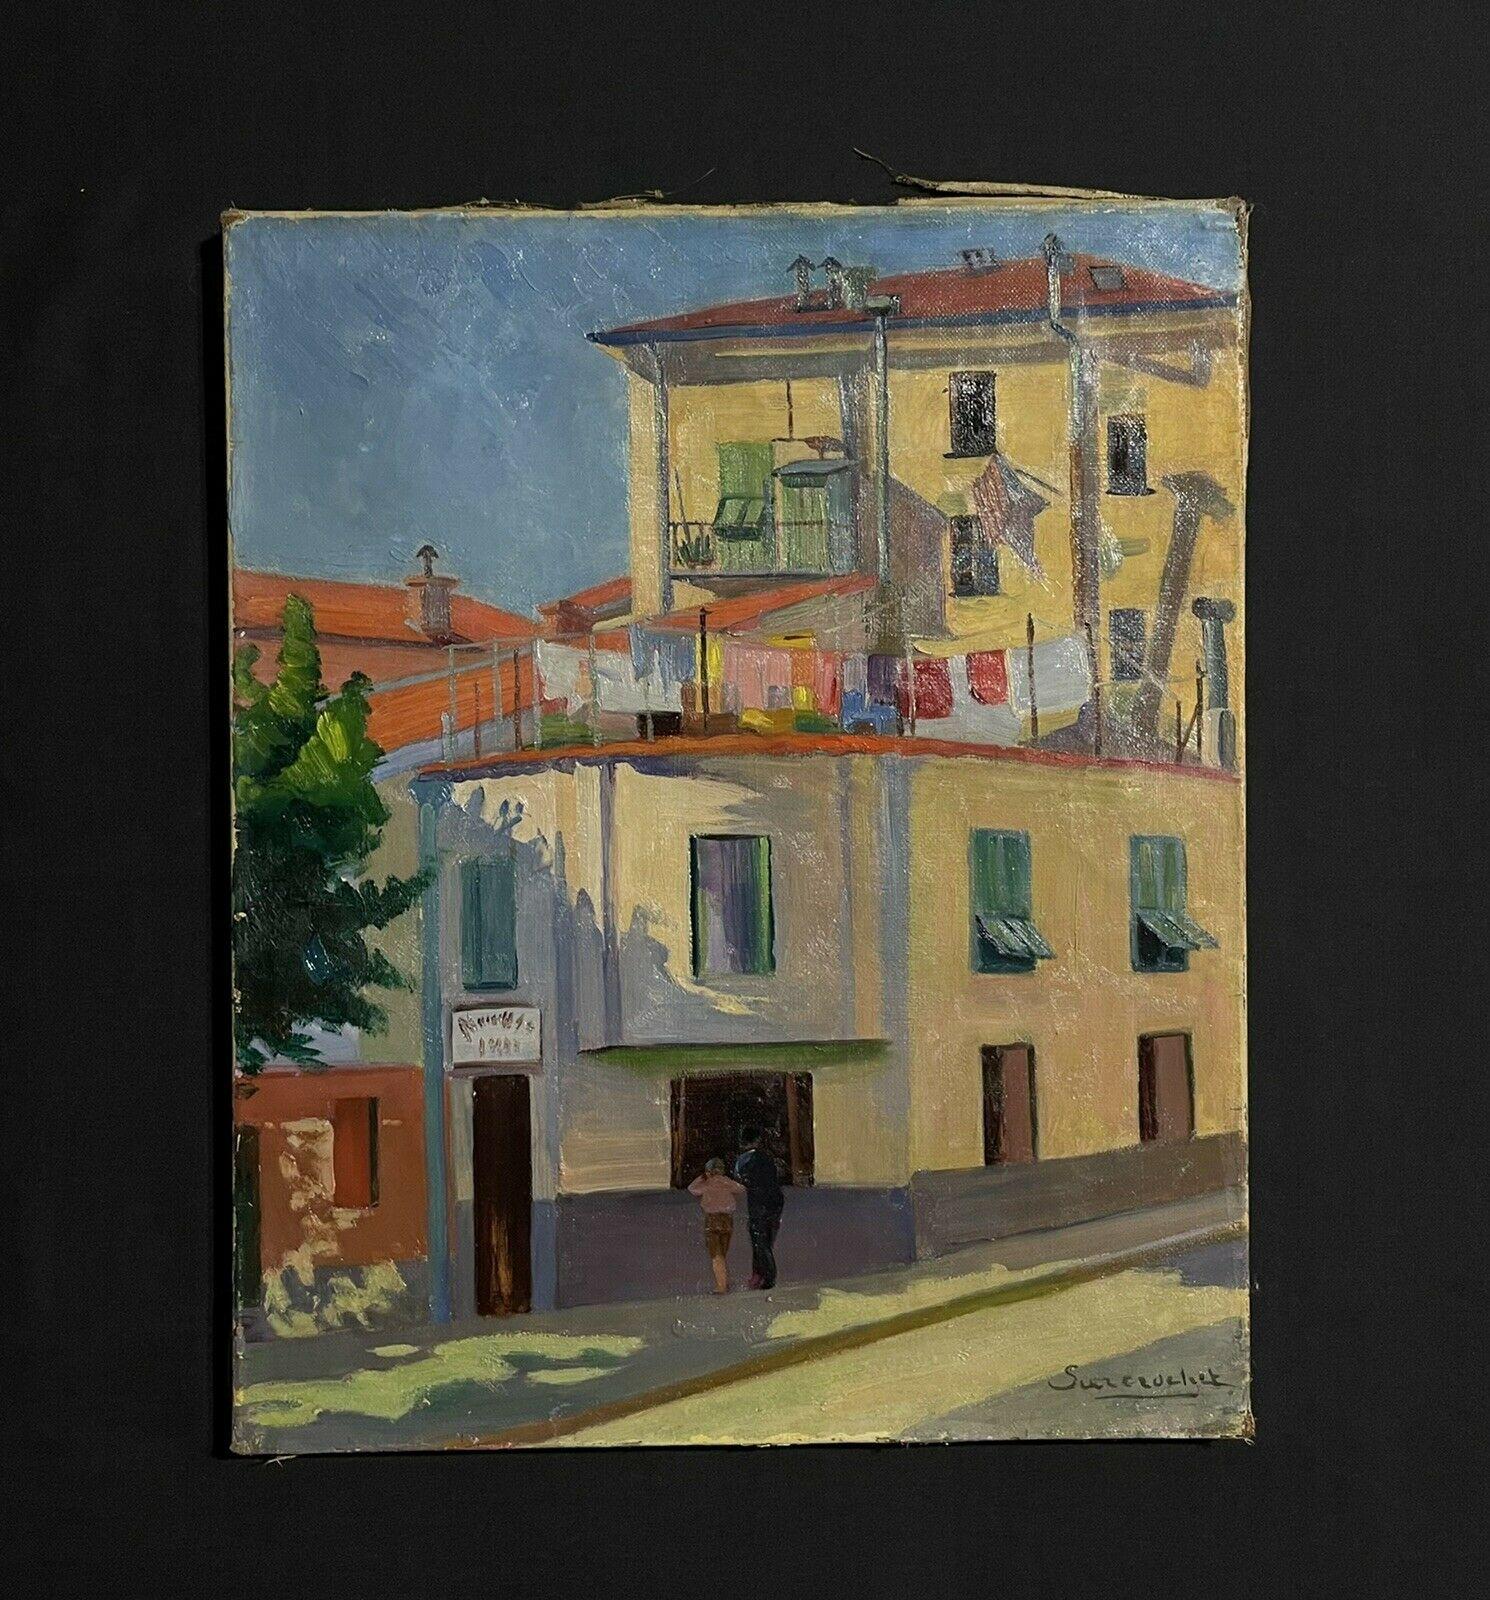 Französische modernistische Ölfiguren aus den 1950er Jahren in der Sunny Street und Gebäuden, signiert – Painting von Unknown